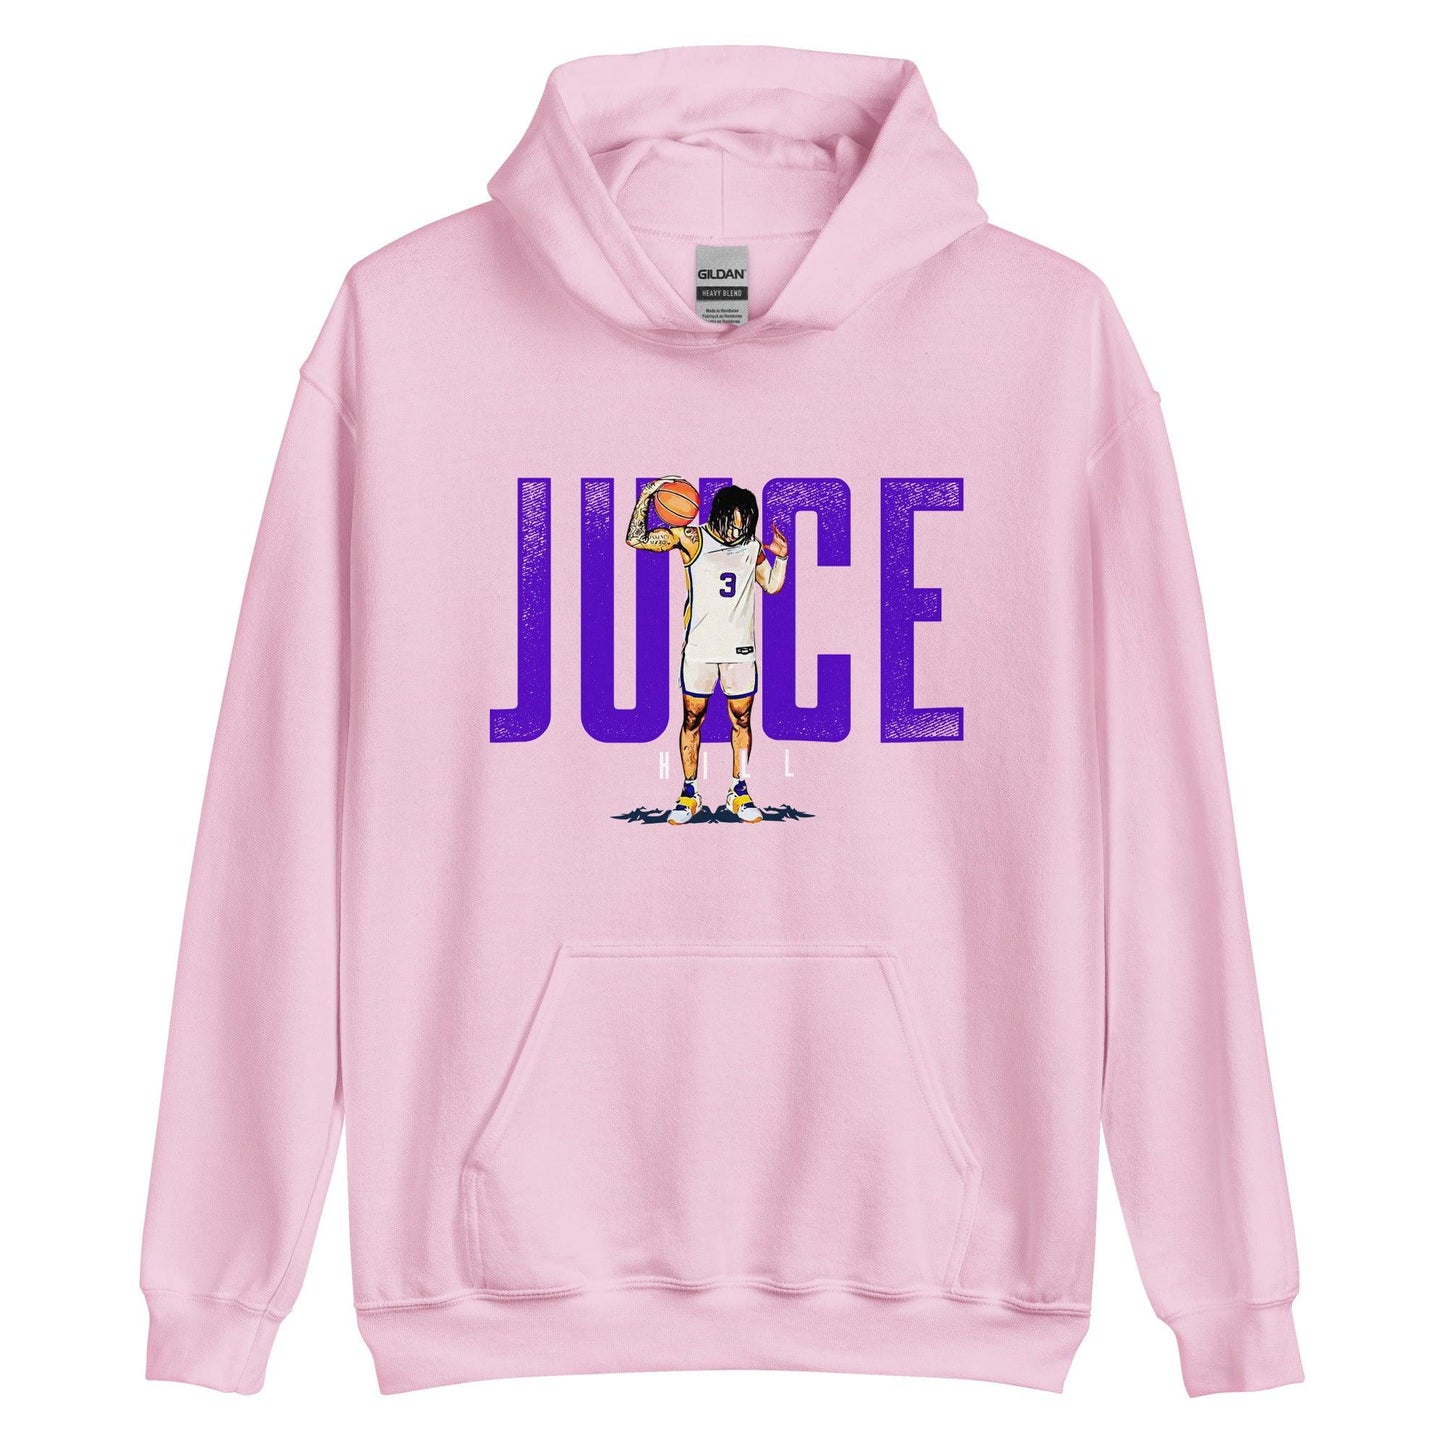 Justice Hill “Juice” Hoodie - Fan Arch